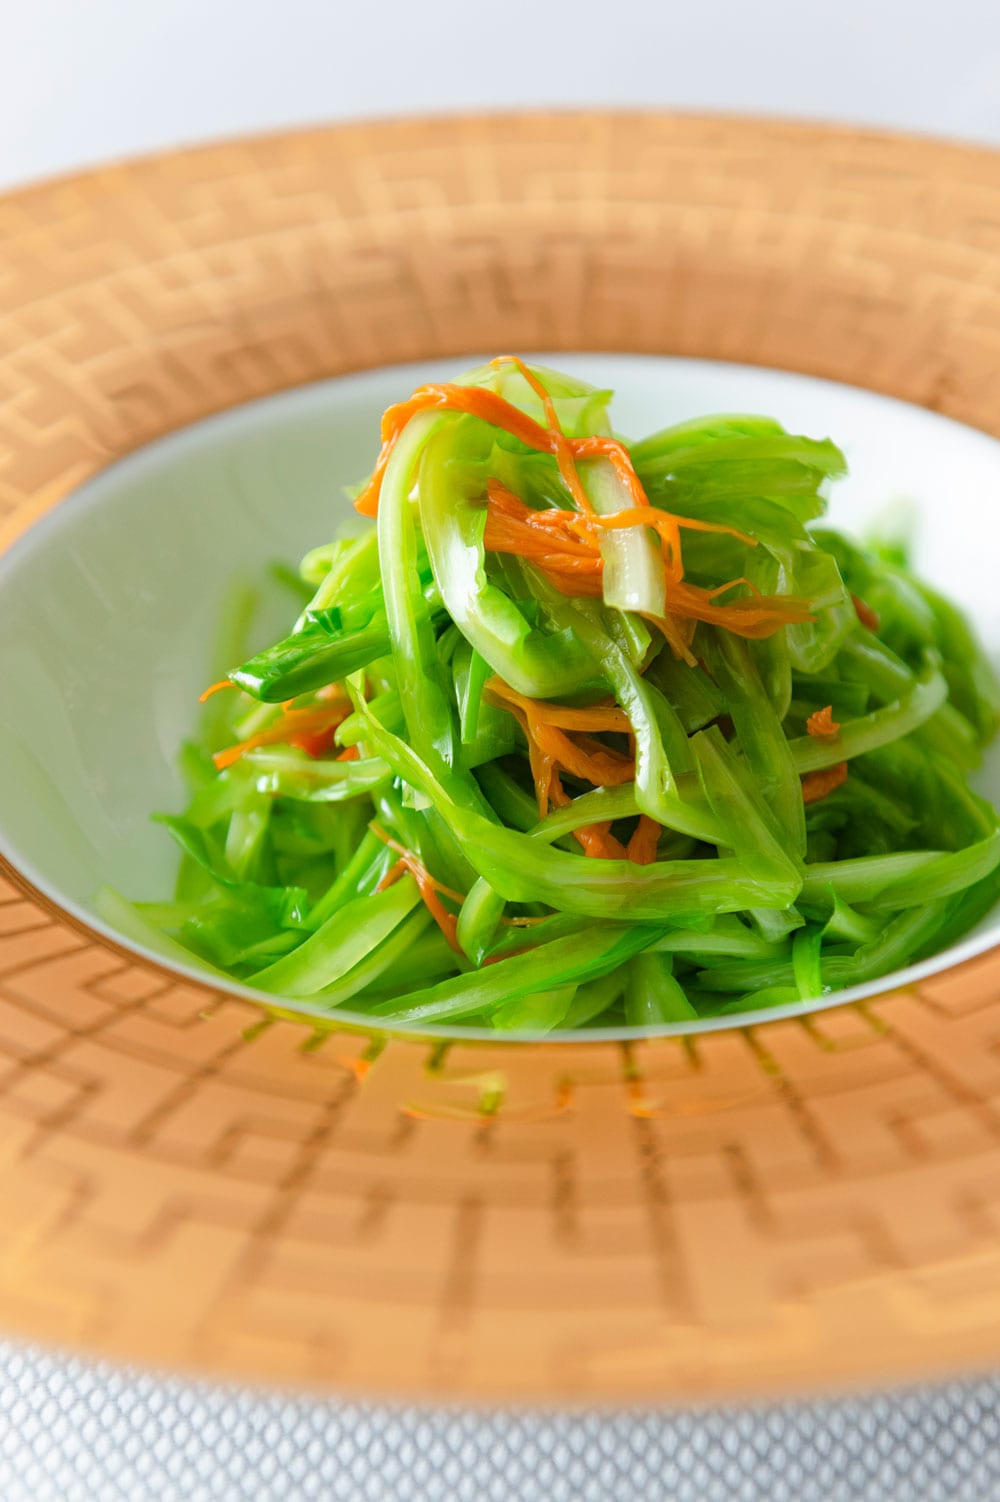 チンゲンサイやネギのような香りの台湾野菜、青龍菜の炒め 2,680円。